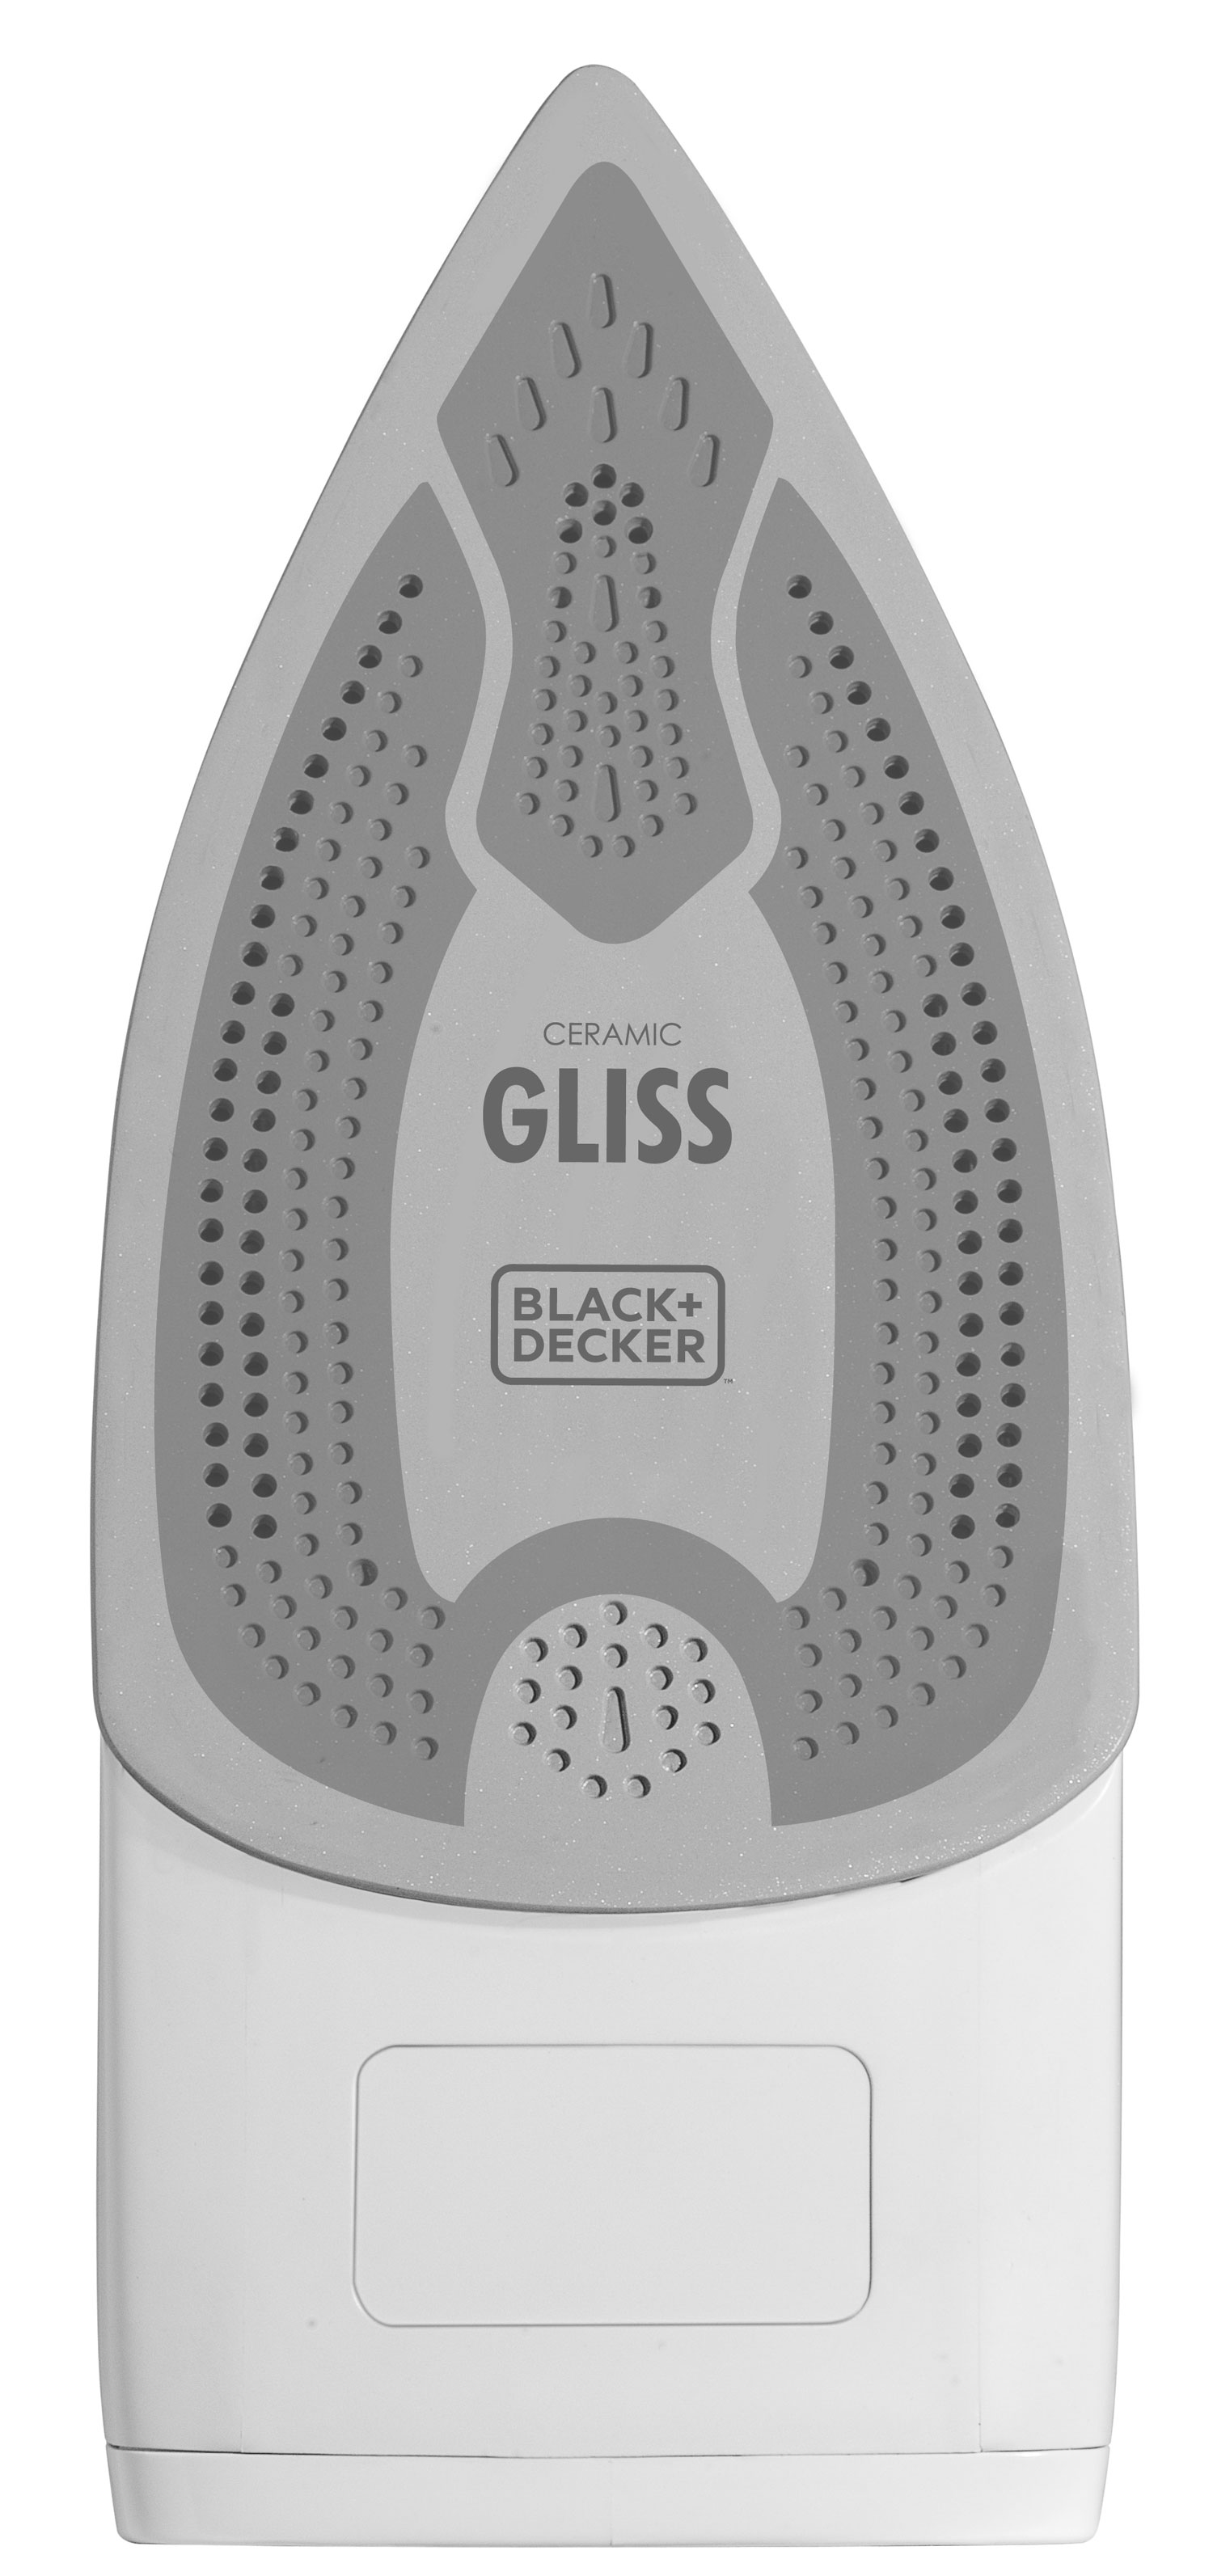 Ferro de Passar a Vapor Ceramic Gliss Black and Decker AJ3030 - 127 V